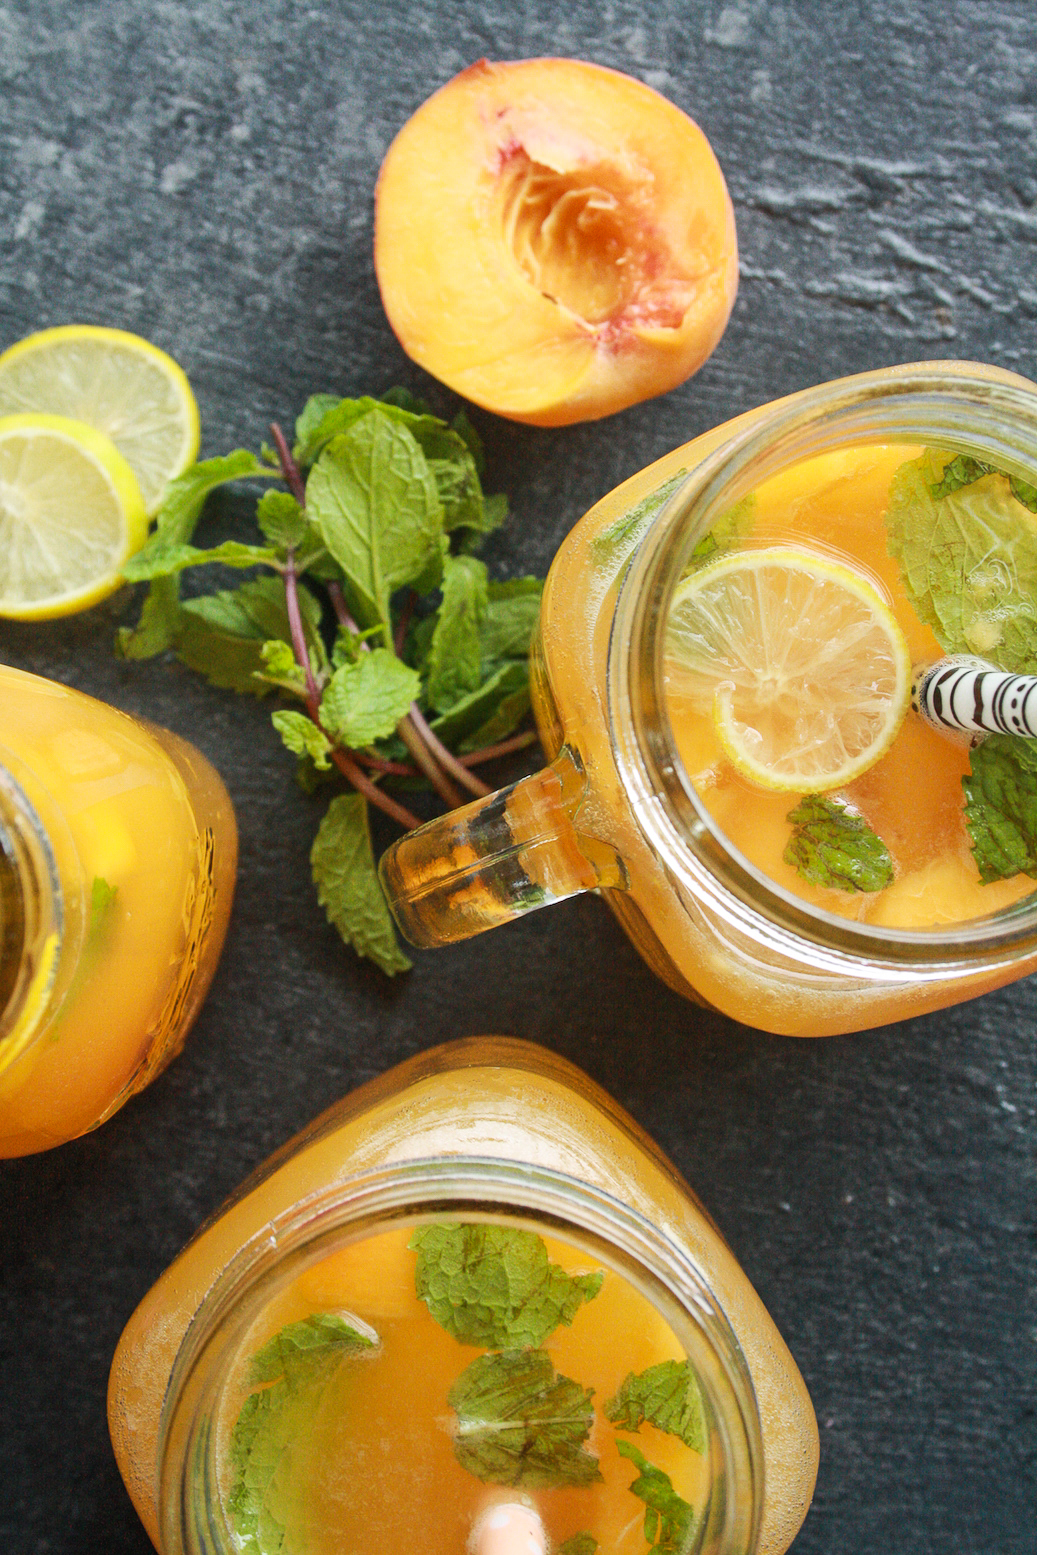 Refreshing lemonade made with fresh peaches and honey!